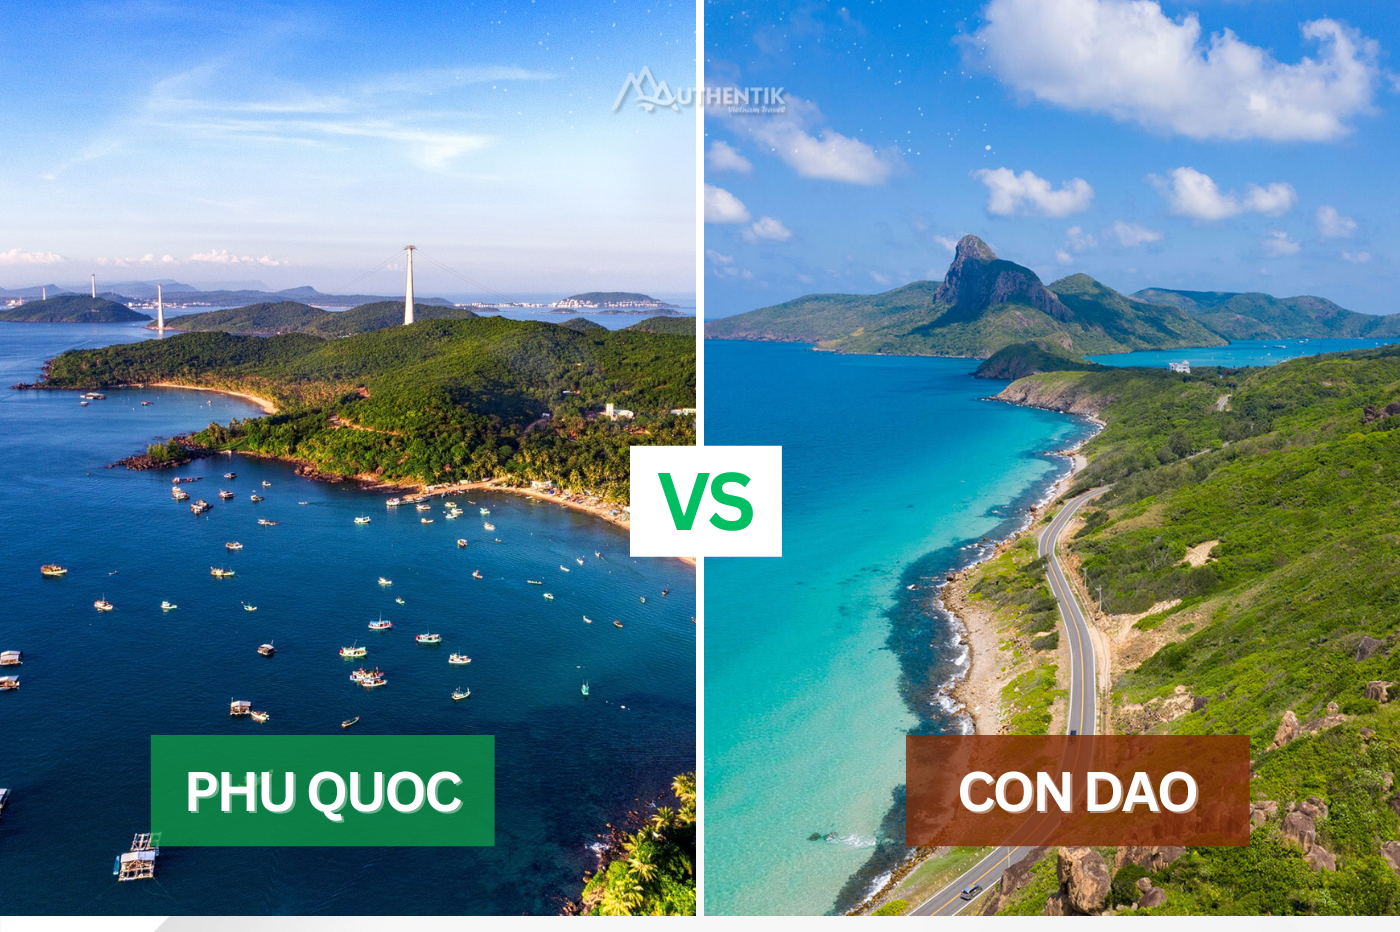 Phu Quoc ou Con Dao ? Quelle est la meilleur île pour un séjour balnéaire au Vietnam ?